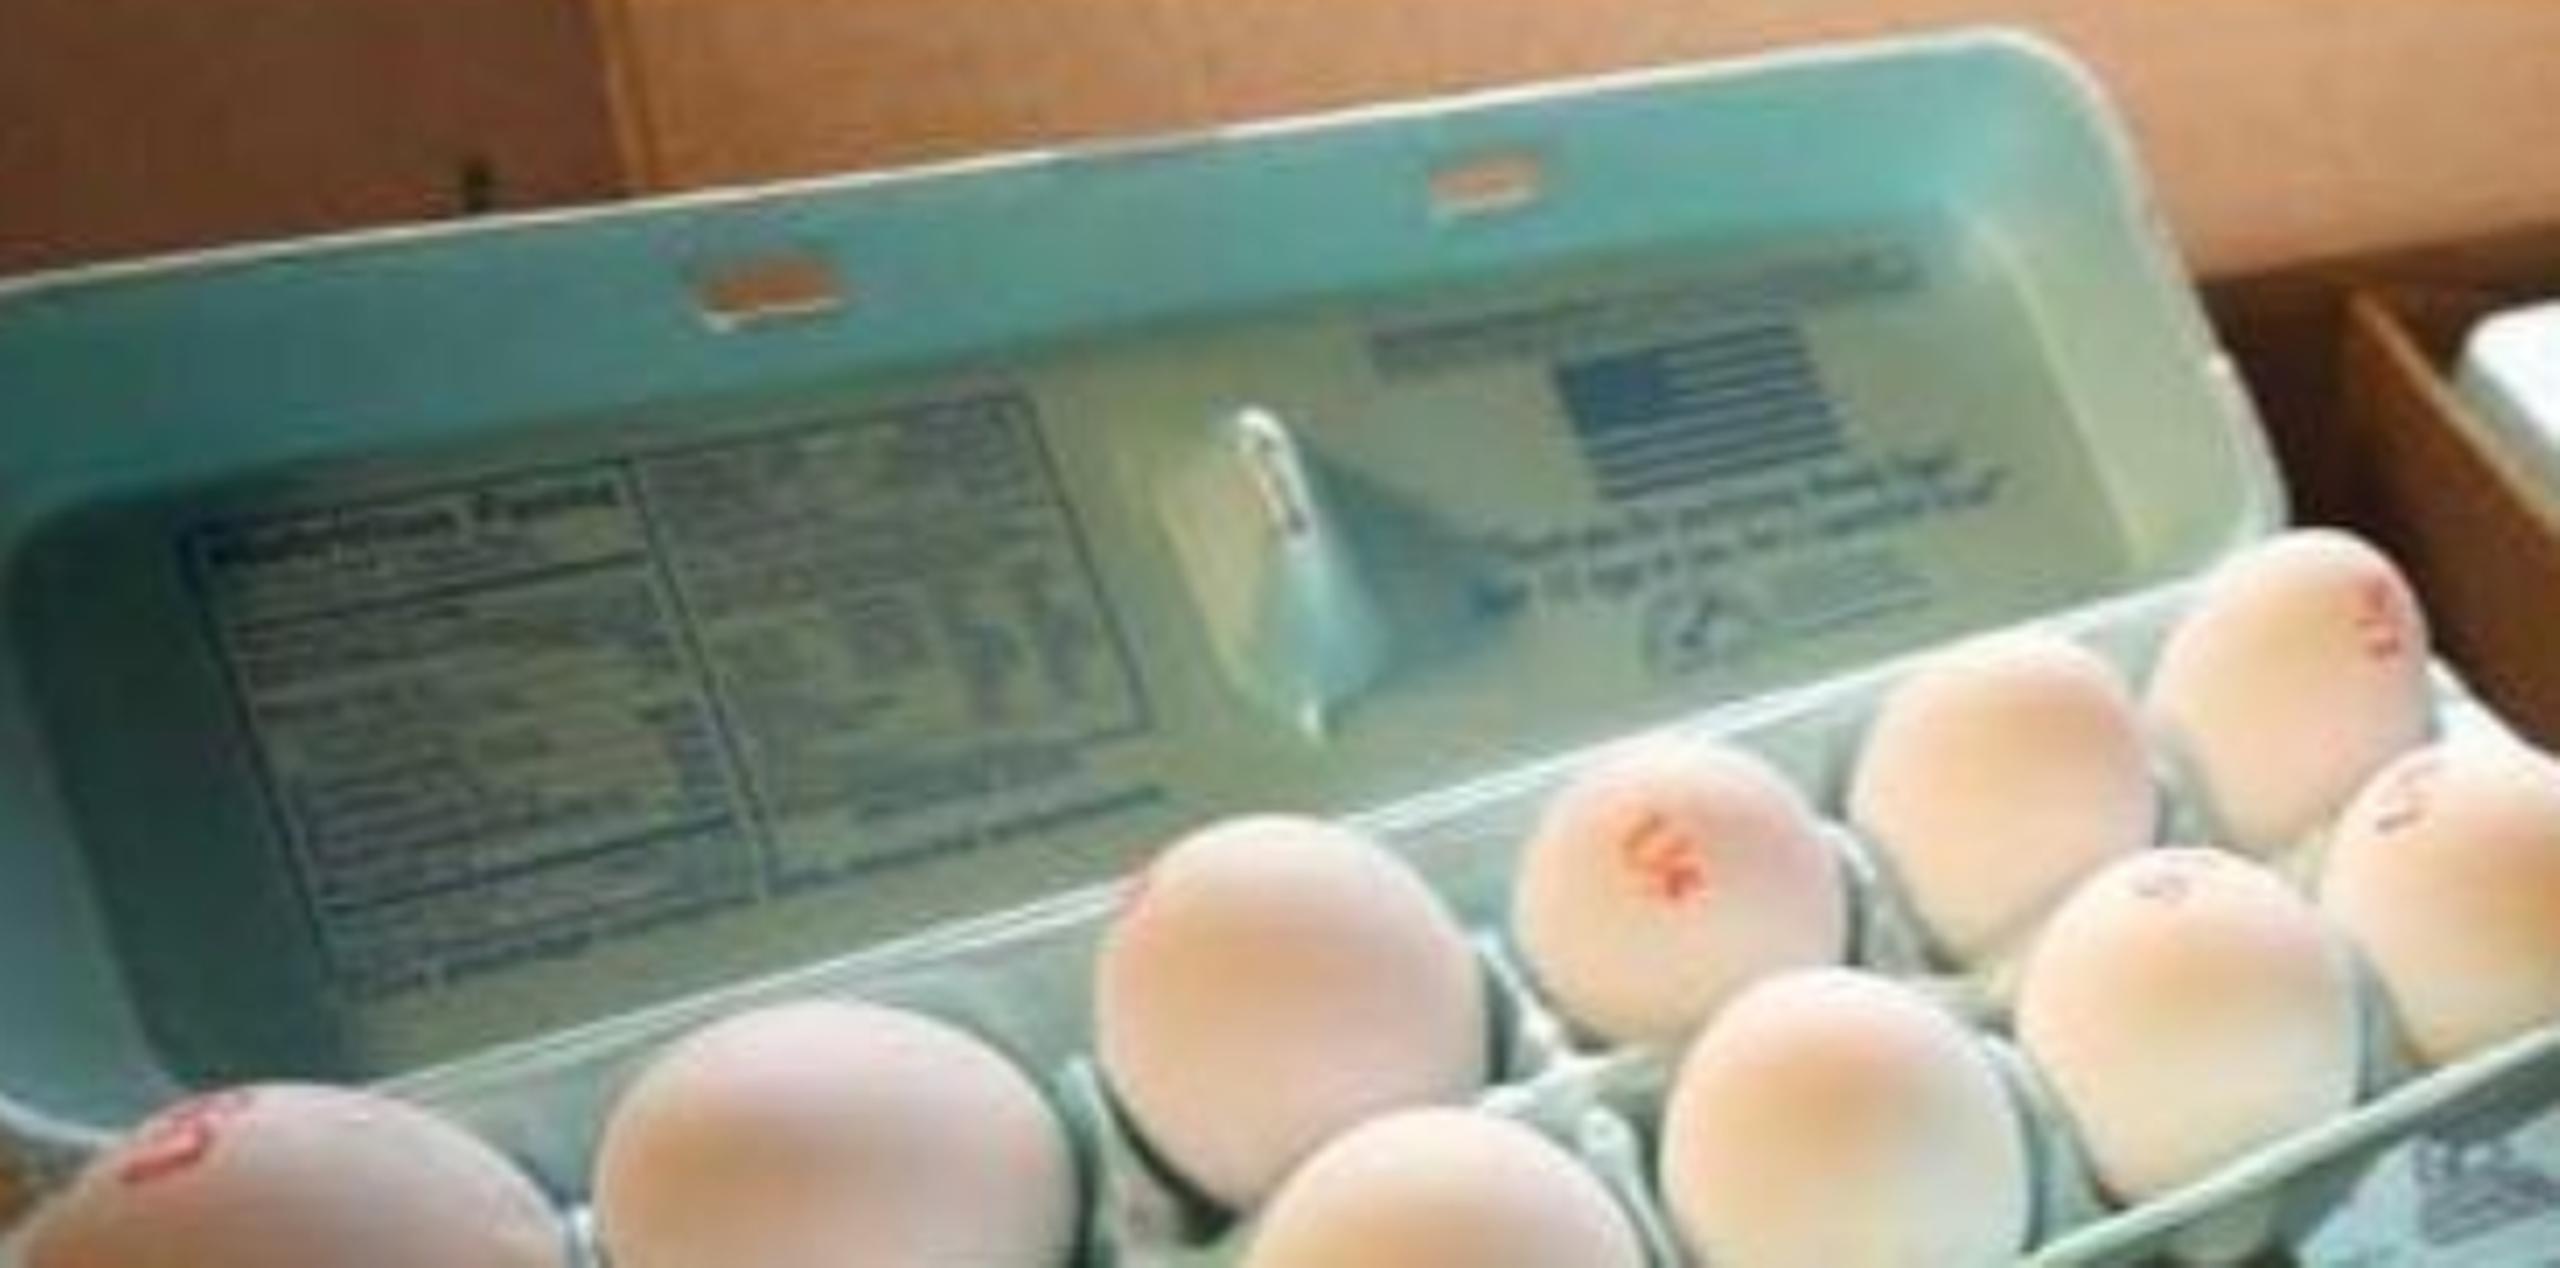 La industria de huevos de mesa en Puerto Rico produce huevos de tamaño grande y extra grande, mientras que las cadenas detallistas importan a la isla huevos medianos, que son menos deseados por los consumidores en Estados Unidos. (Archivo)